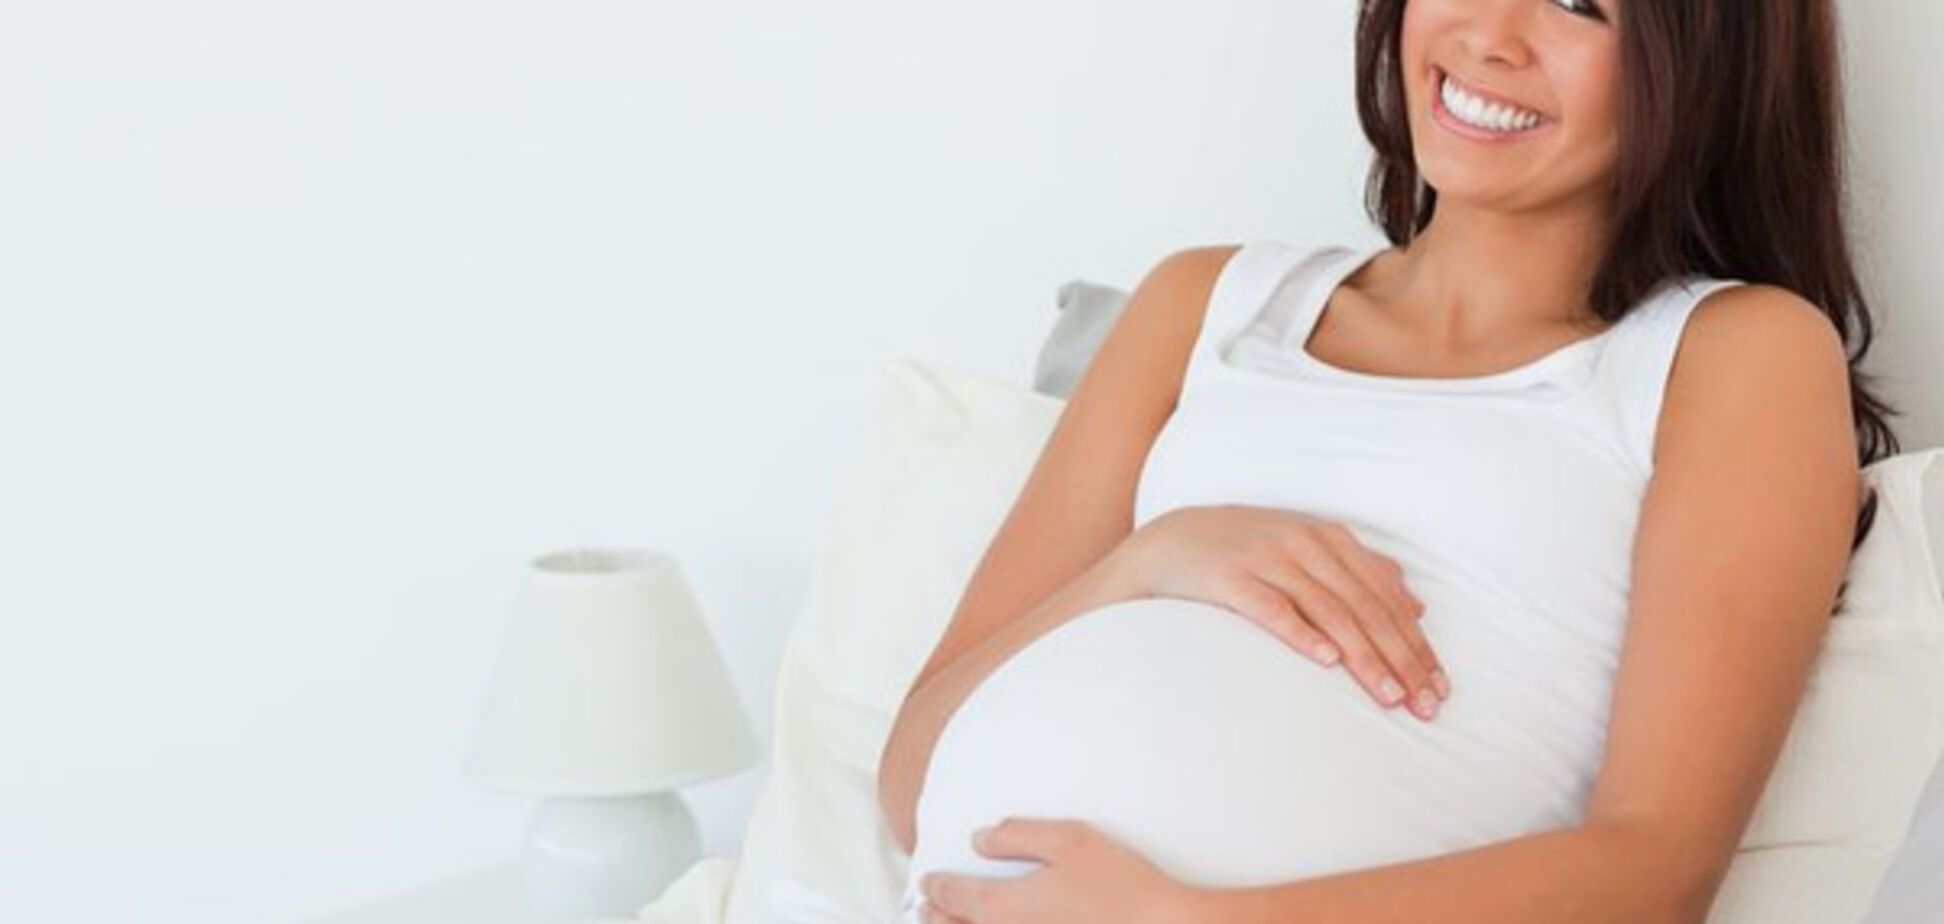 Вчені пояснили, чим небезпечний сон на спині під час вагітності